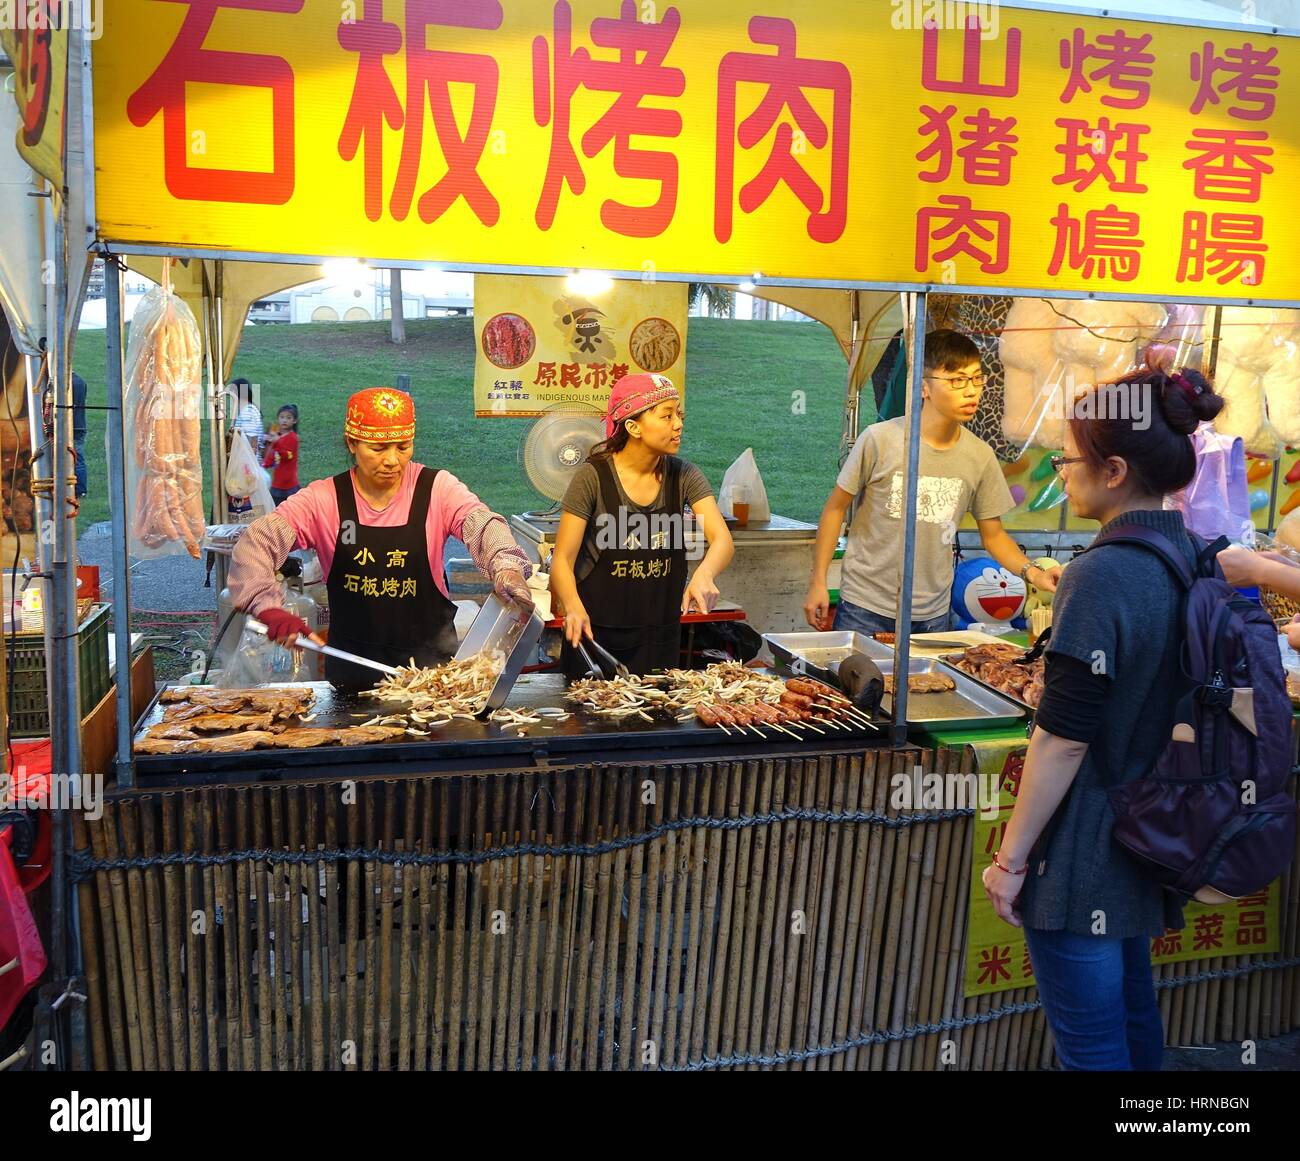 KAOHSIUNG, TAIWAN -- 13 février 2016 : un étal vend les aliments cuits sur une plaque de fer au cours de la Fête des lanternes 2016. Banque D'Images